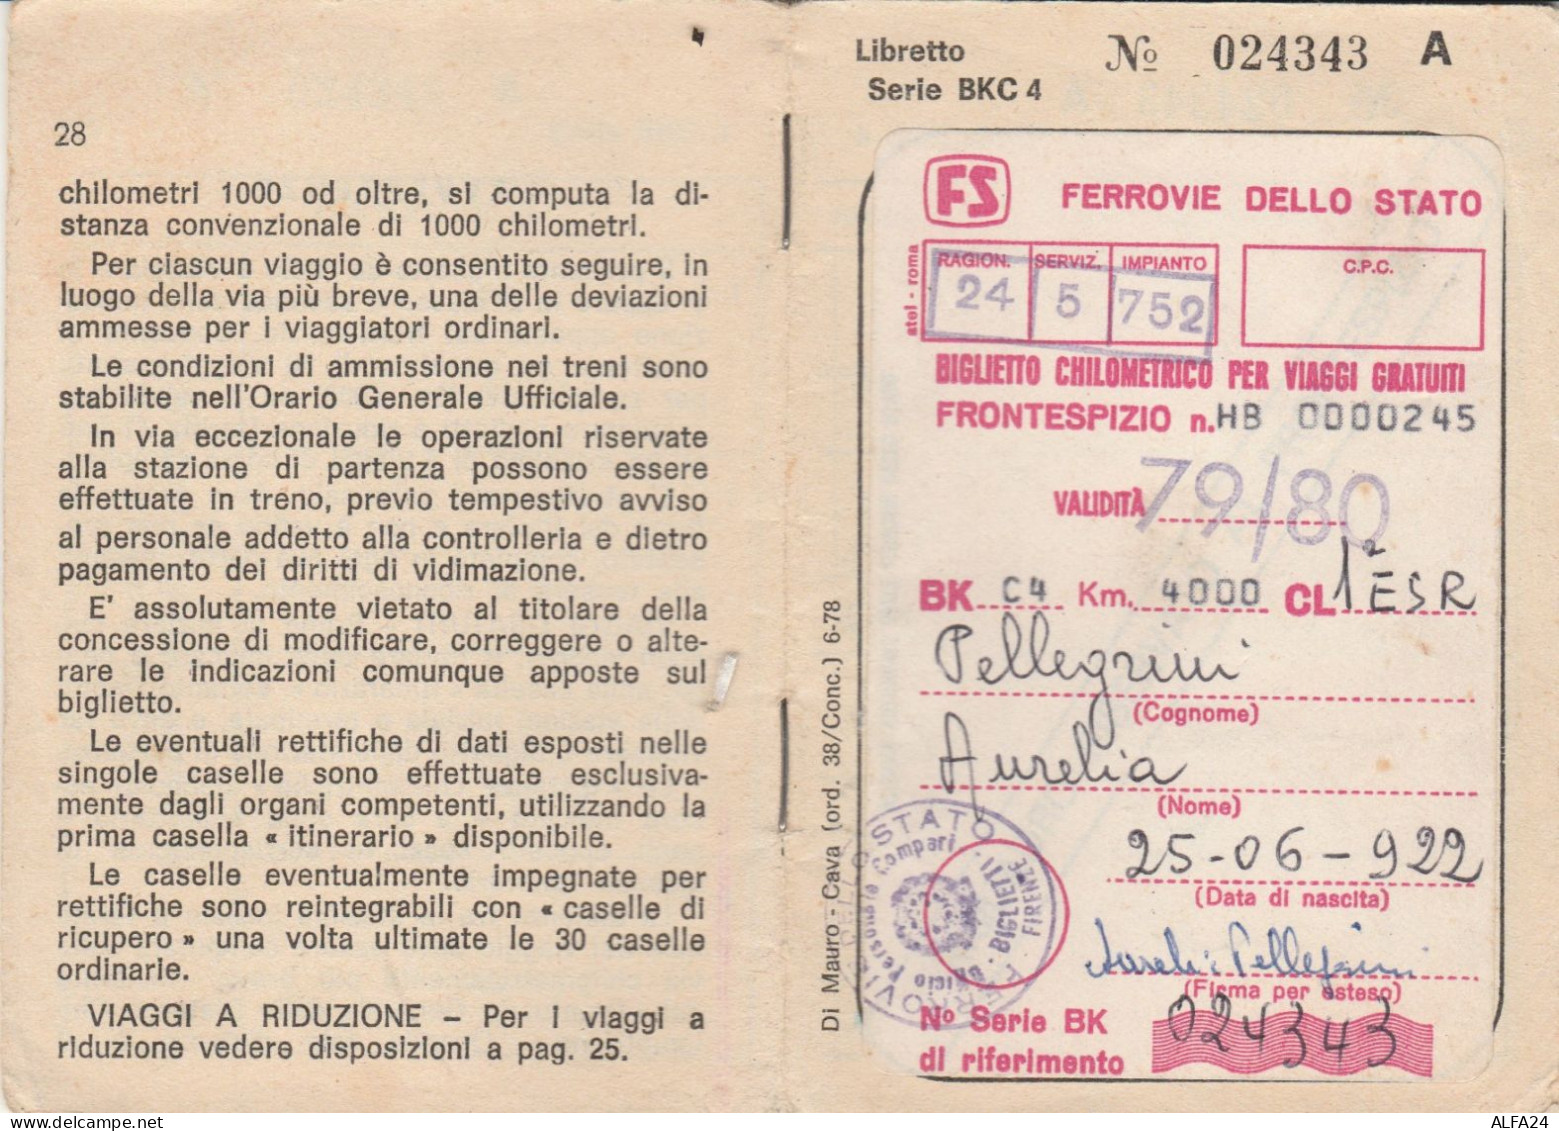 LIBRETTO FERROVIE BIGLIETTO CHILOMETRICO VIAGGI GRATUITI 1979-80 (XF139 - Europe